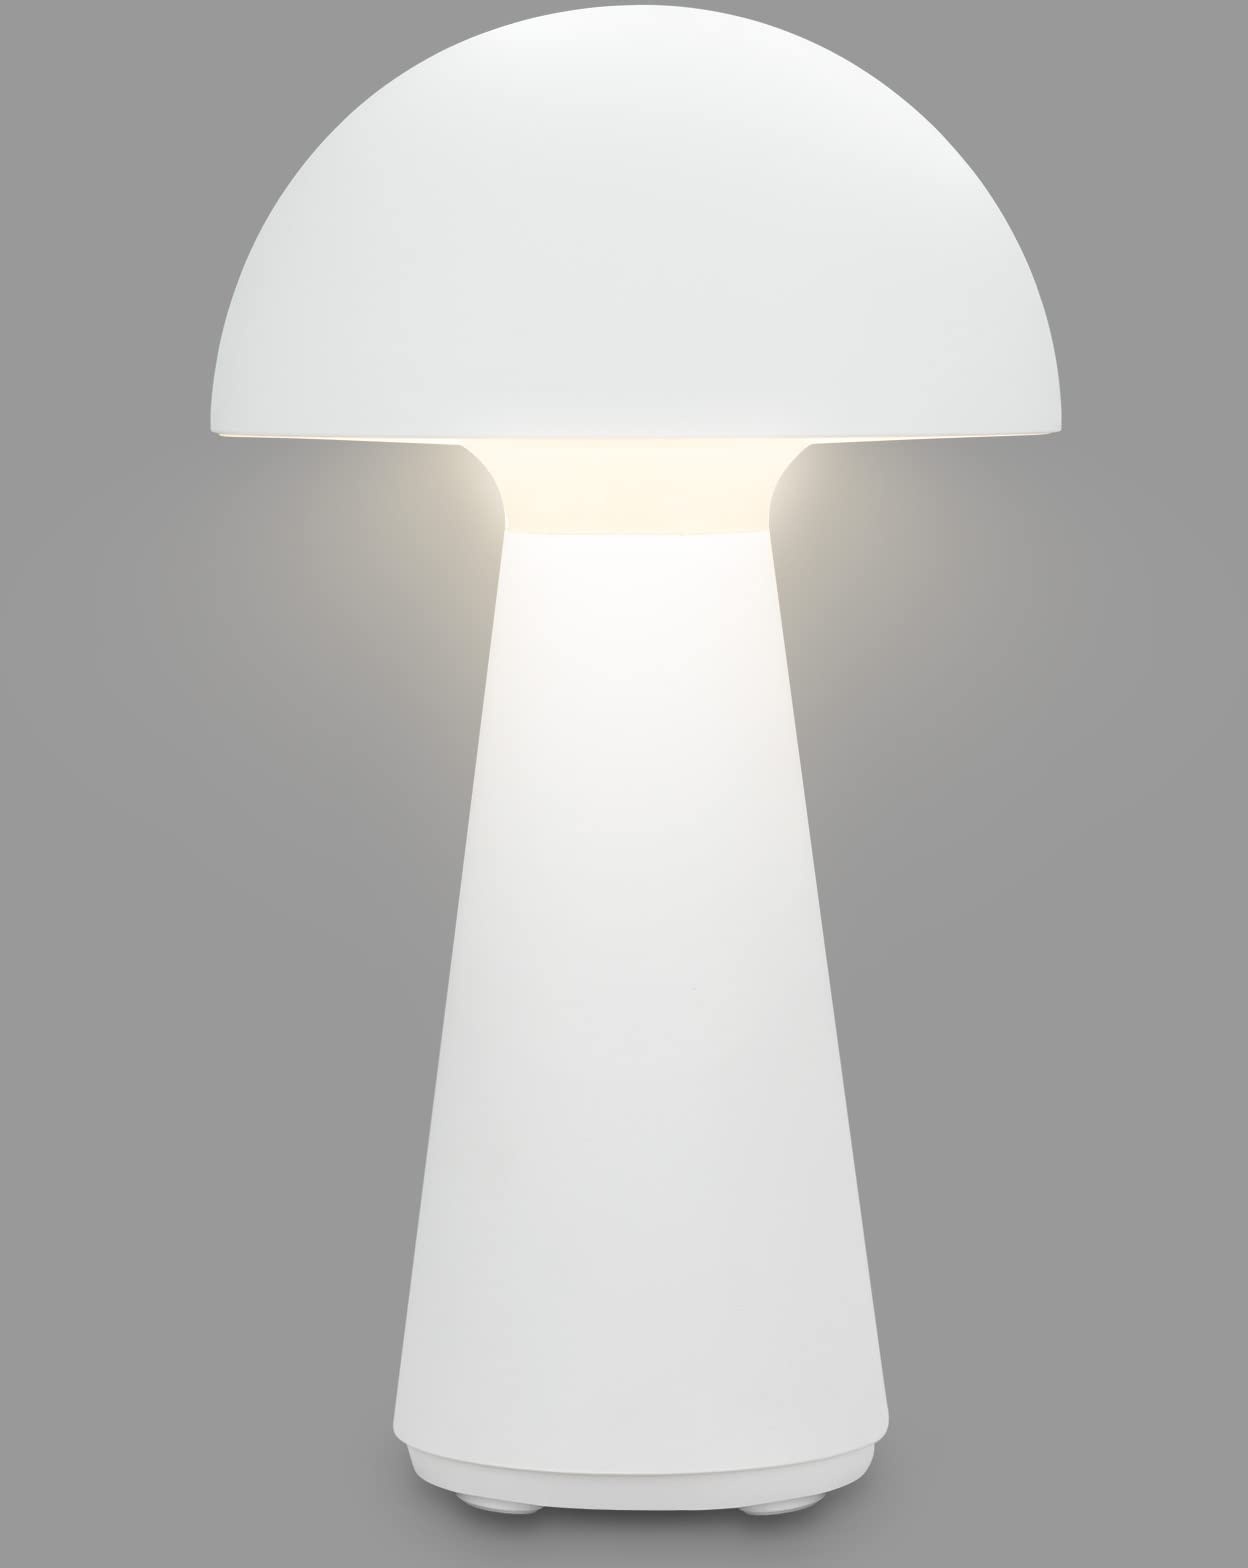 BRILONER - LED Tischlampe kabellos mit Touch, dimmbar in Stufen, warmweiße Lichtfarbe, Nachttischlampe, Leselampe, LED lampe, Campinglampe, Tischleuchte, Akku Lampe, Outdoor Lampe, 28x16 cm, Weiß